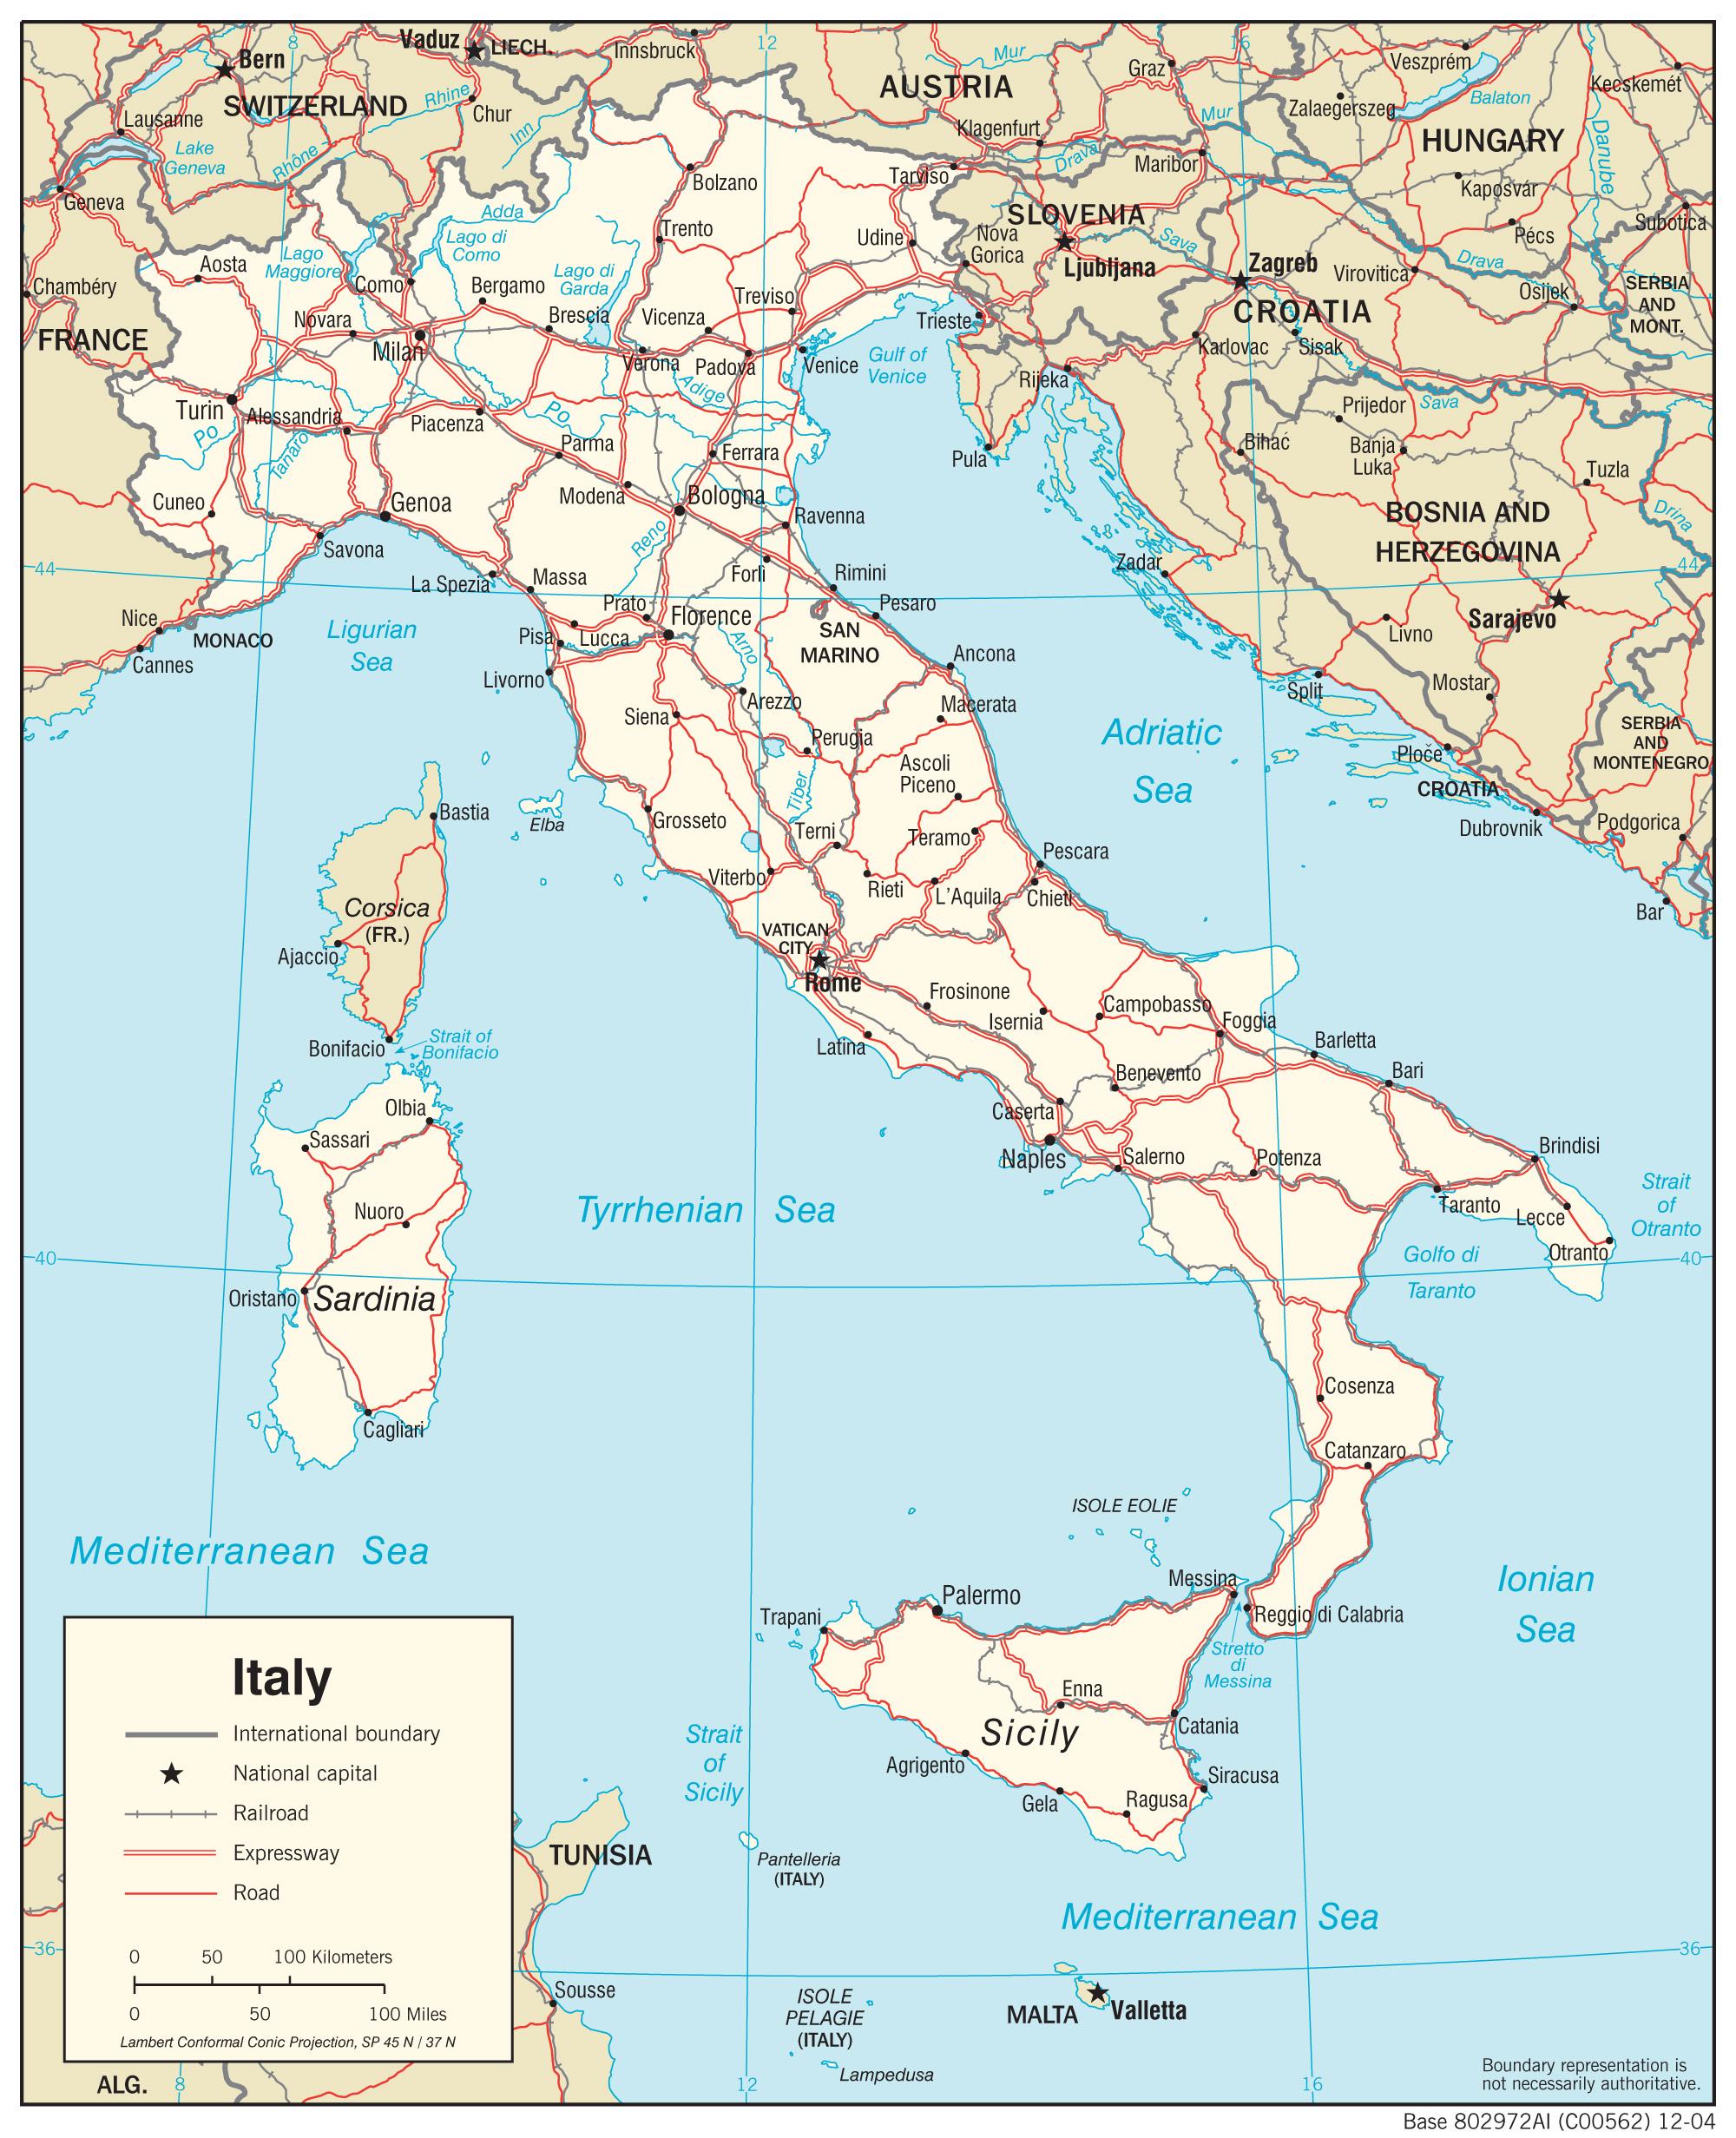 karta italije verona Interaktivna mapa Italije, gdje je Italija se nalazi na kartici  karta italije verona